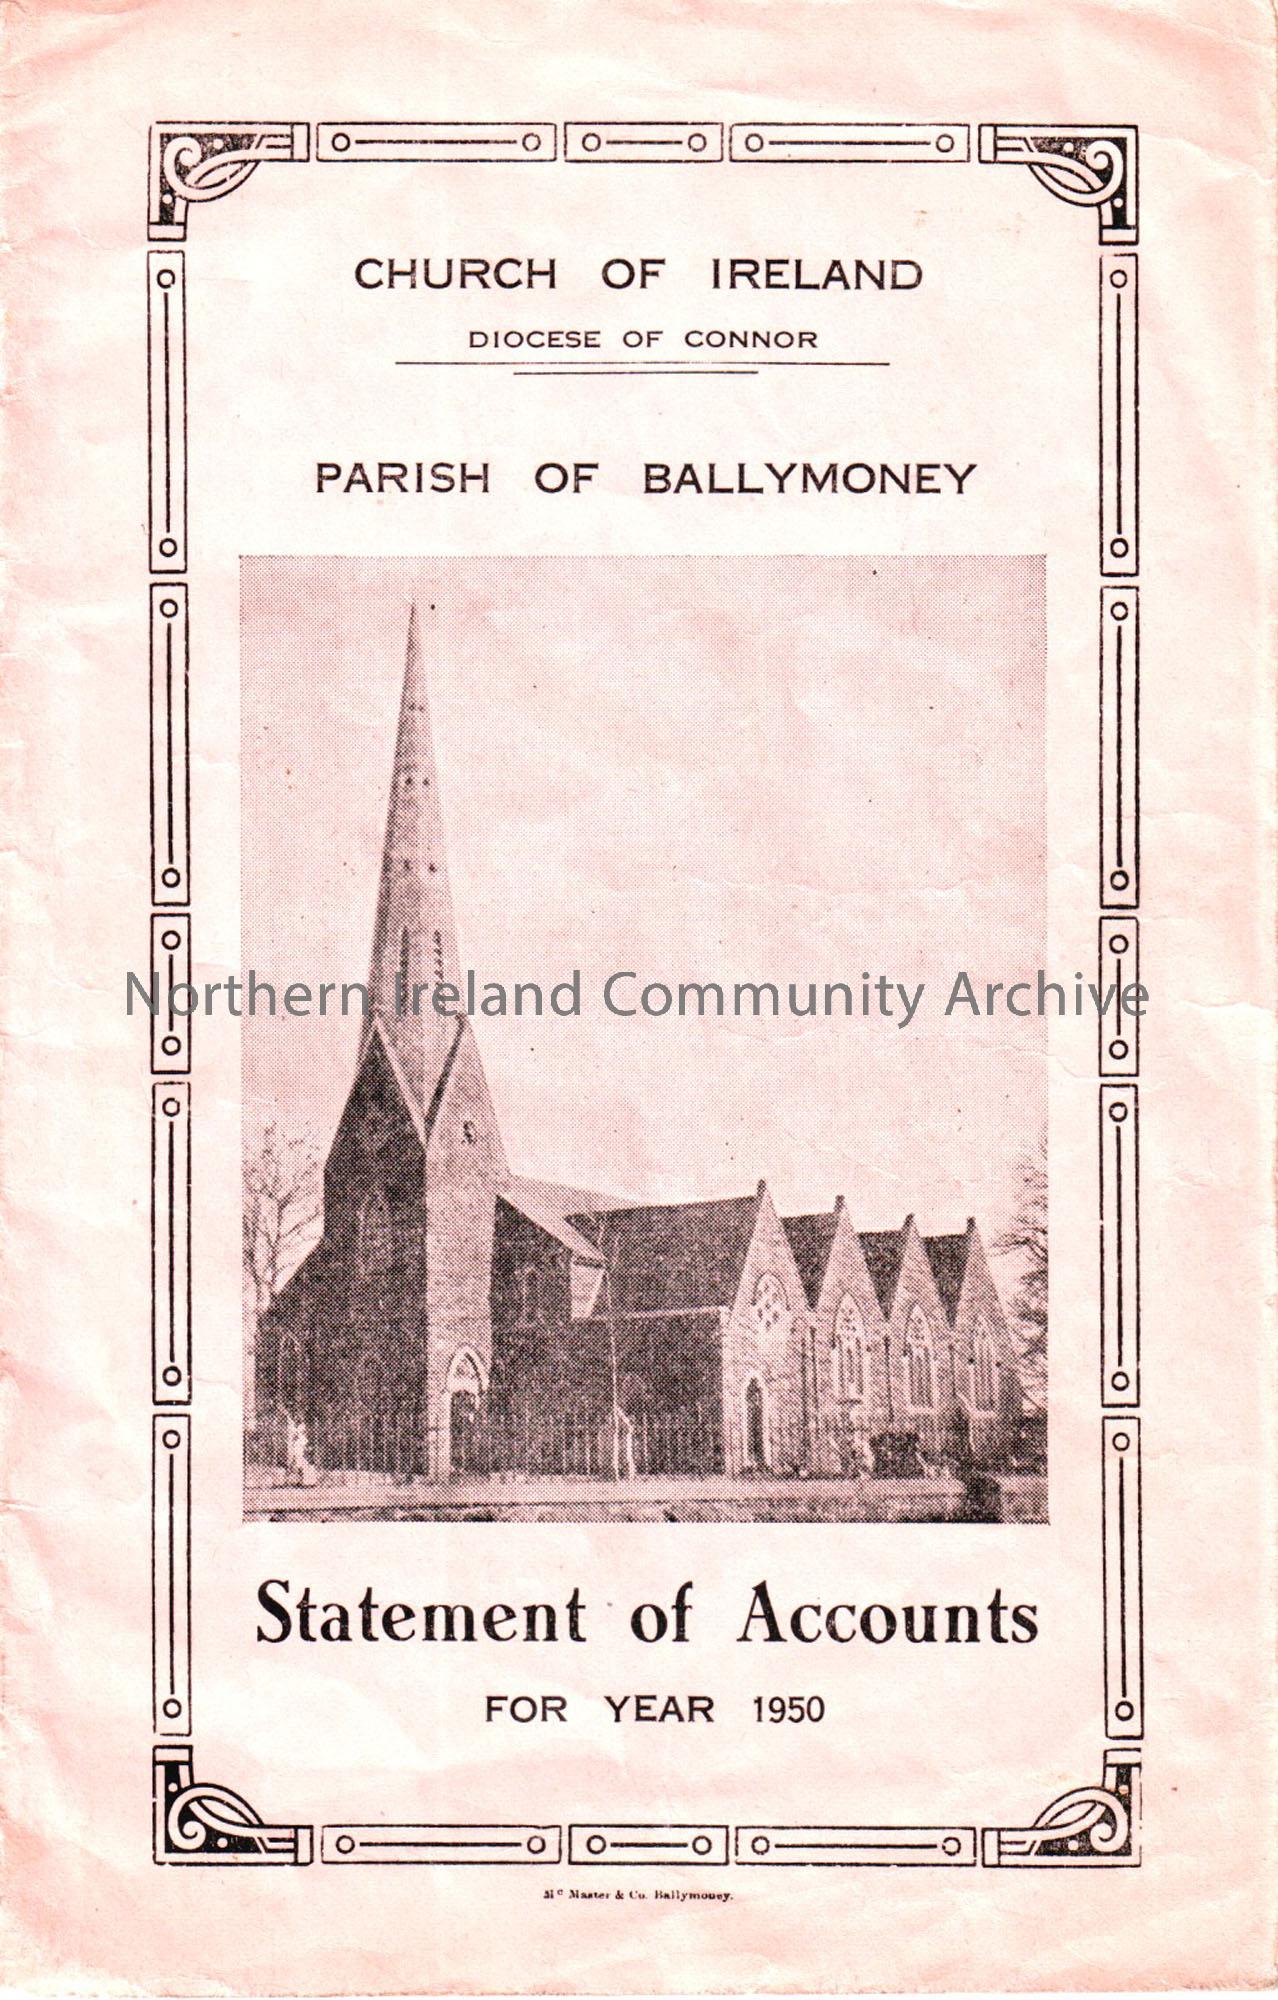 Church of Ireland Parish of Ballymoney statement of accounts for year 1950